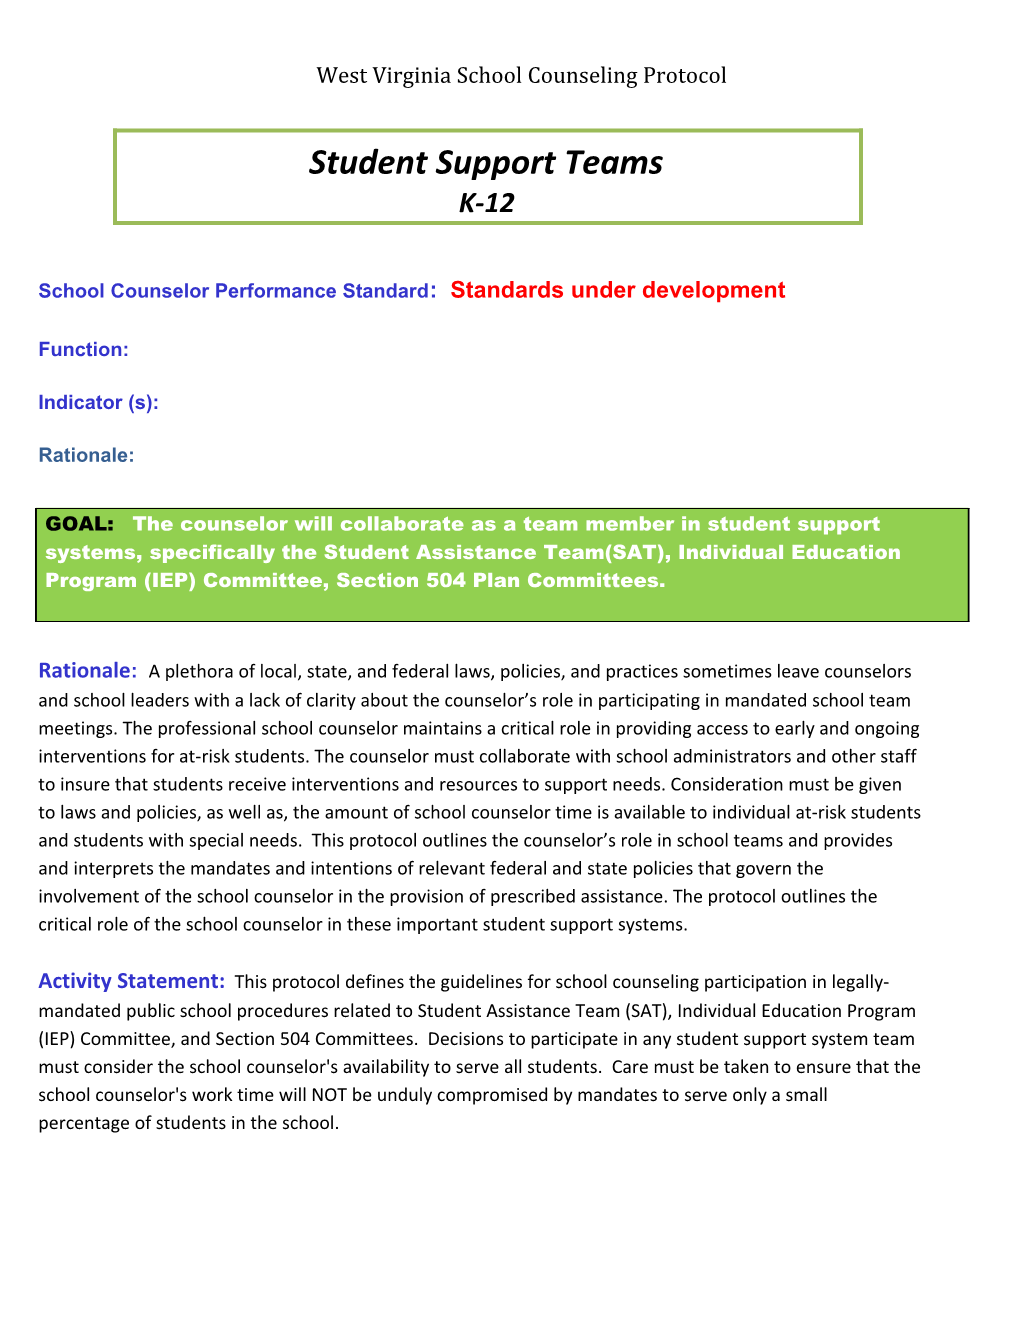 School Counselor Performance Standard: Standards Under Development